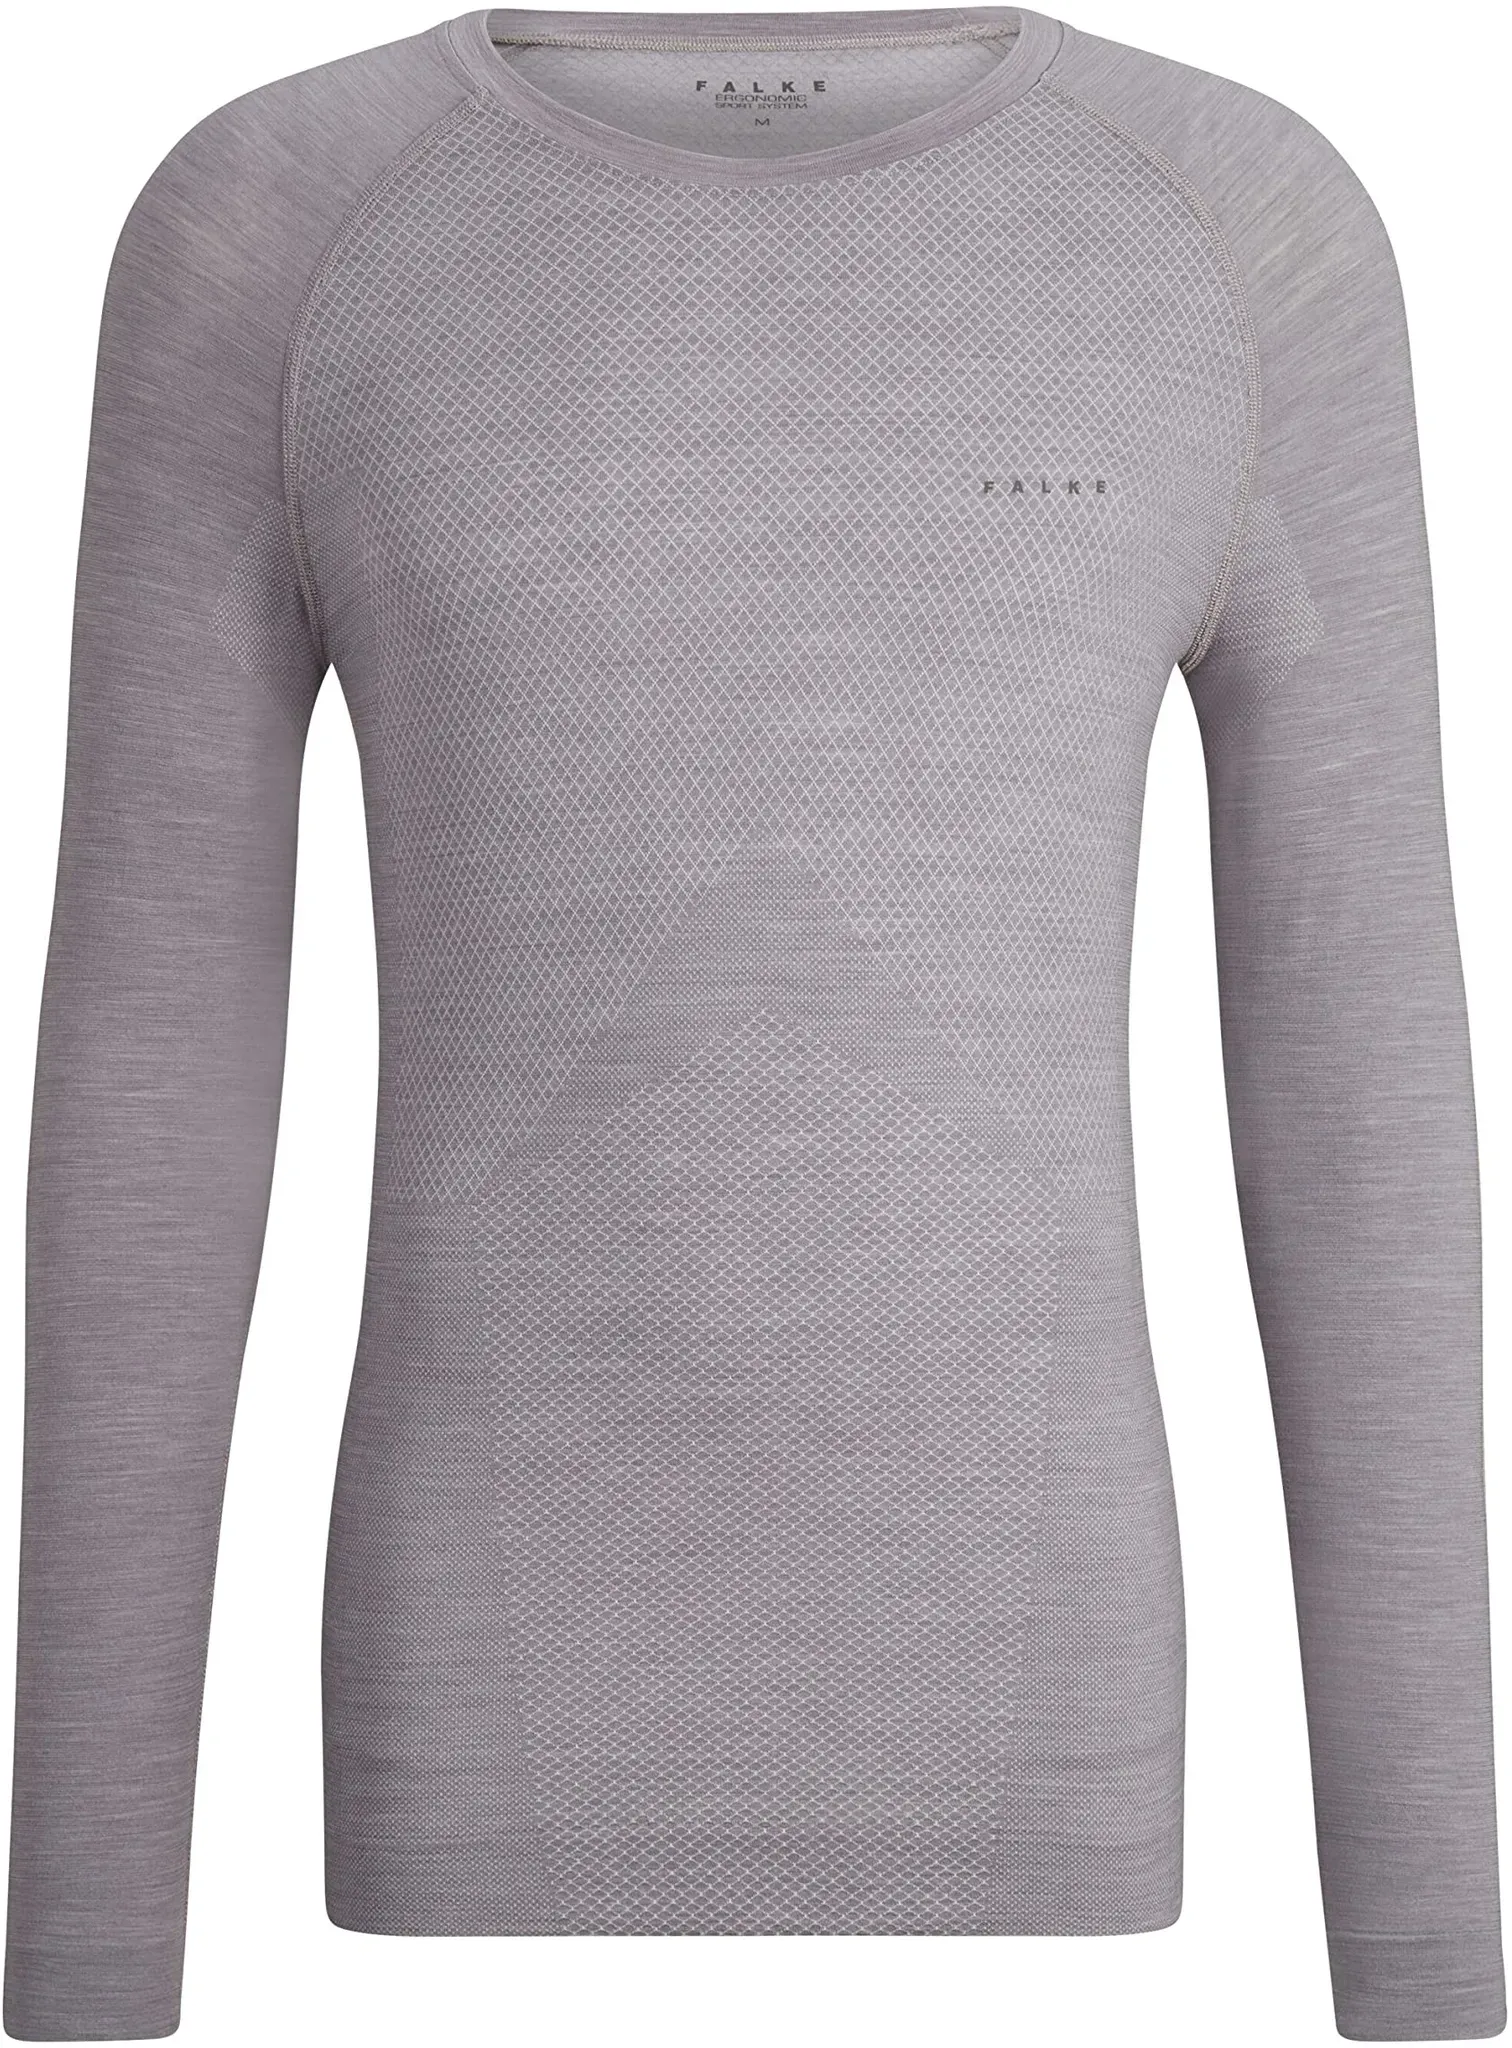 FALKE Herren Baselayer-Shirt Wool-Tech Light Round Neck M L/S SH Wolle Schnelltrocknend 1 Stück, Grau (Grey-Heather 3757), XL